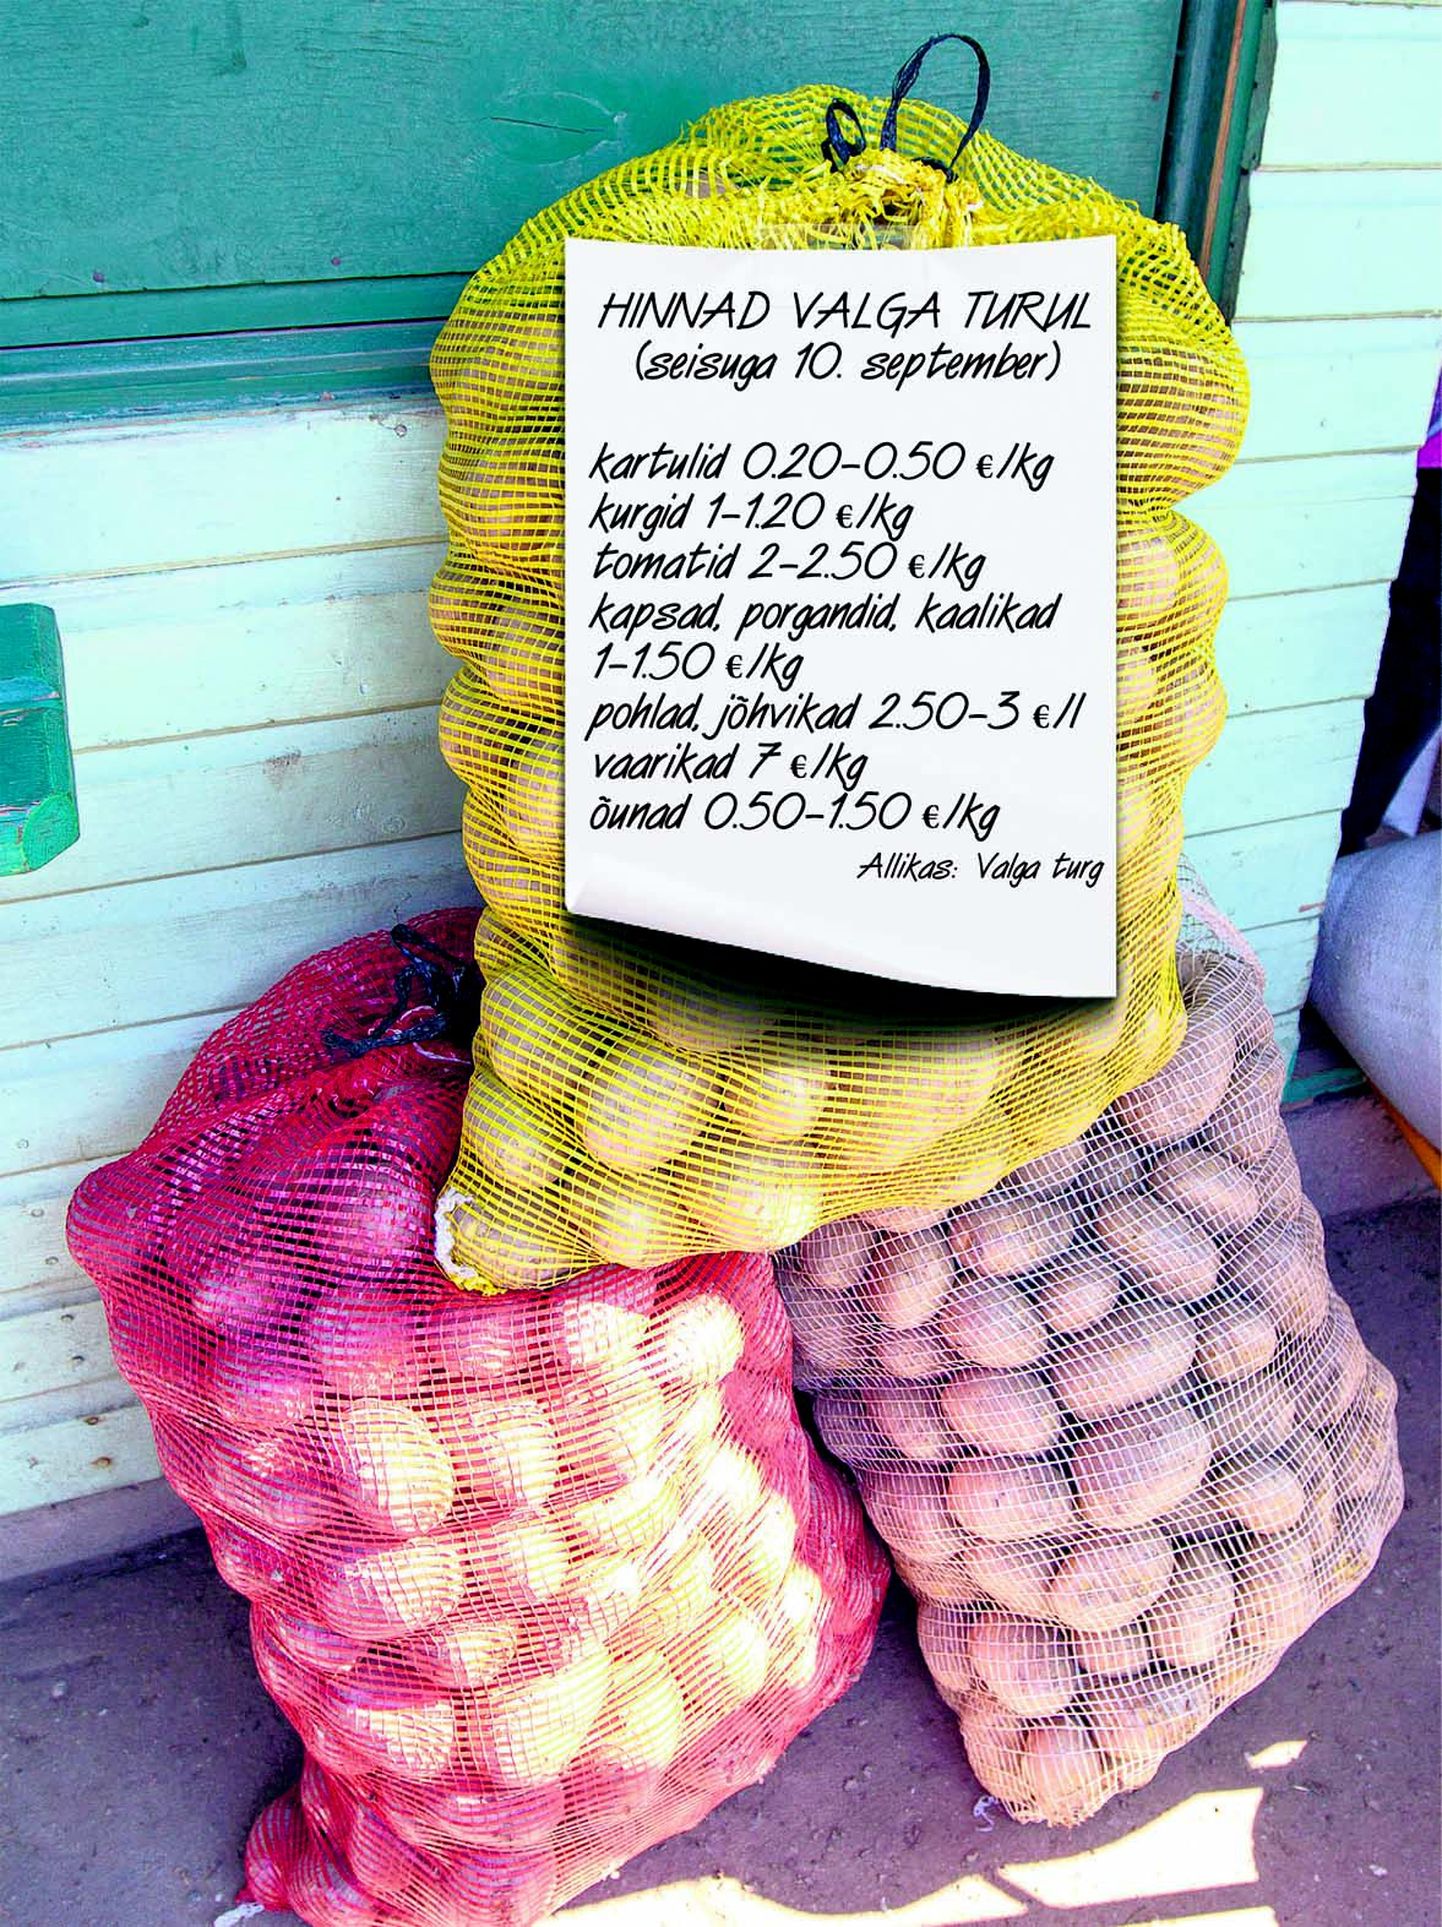 Sõltuvalt kartulimugulate suurusest maksis teisipäeval kilo kartuleid Valga turul kakskümmend kuni viiskümmend senti. Erinevaid sorte oli müügil kuus-seitse.